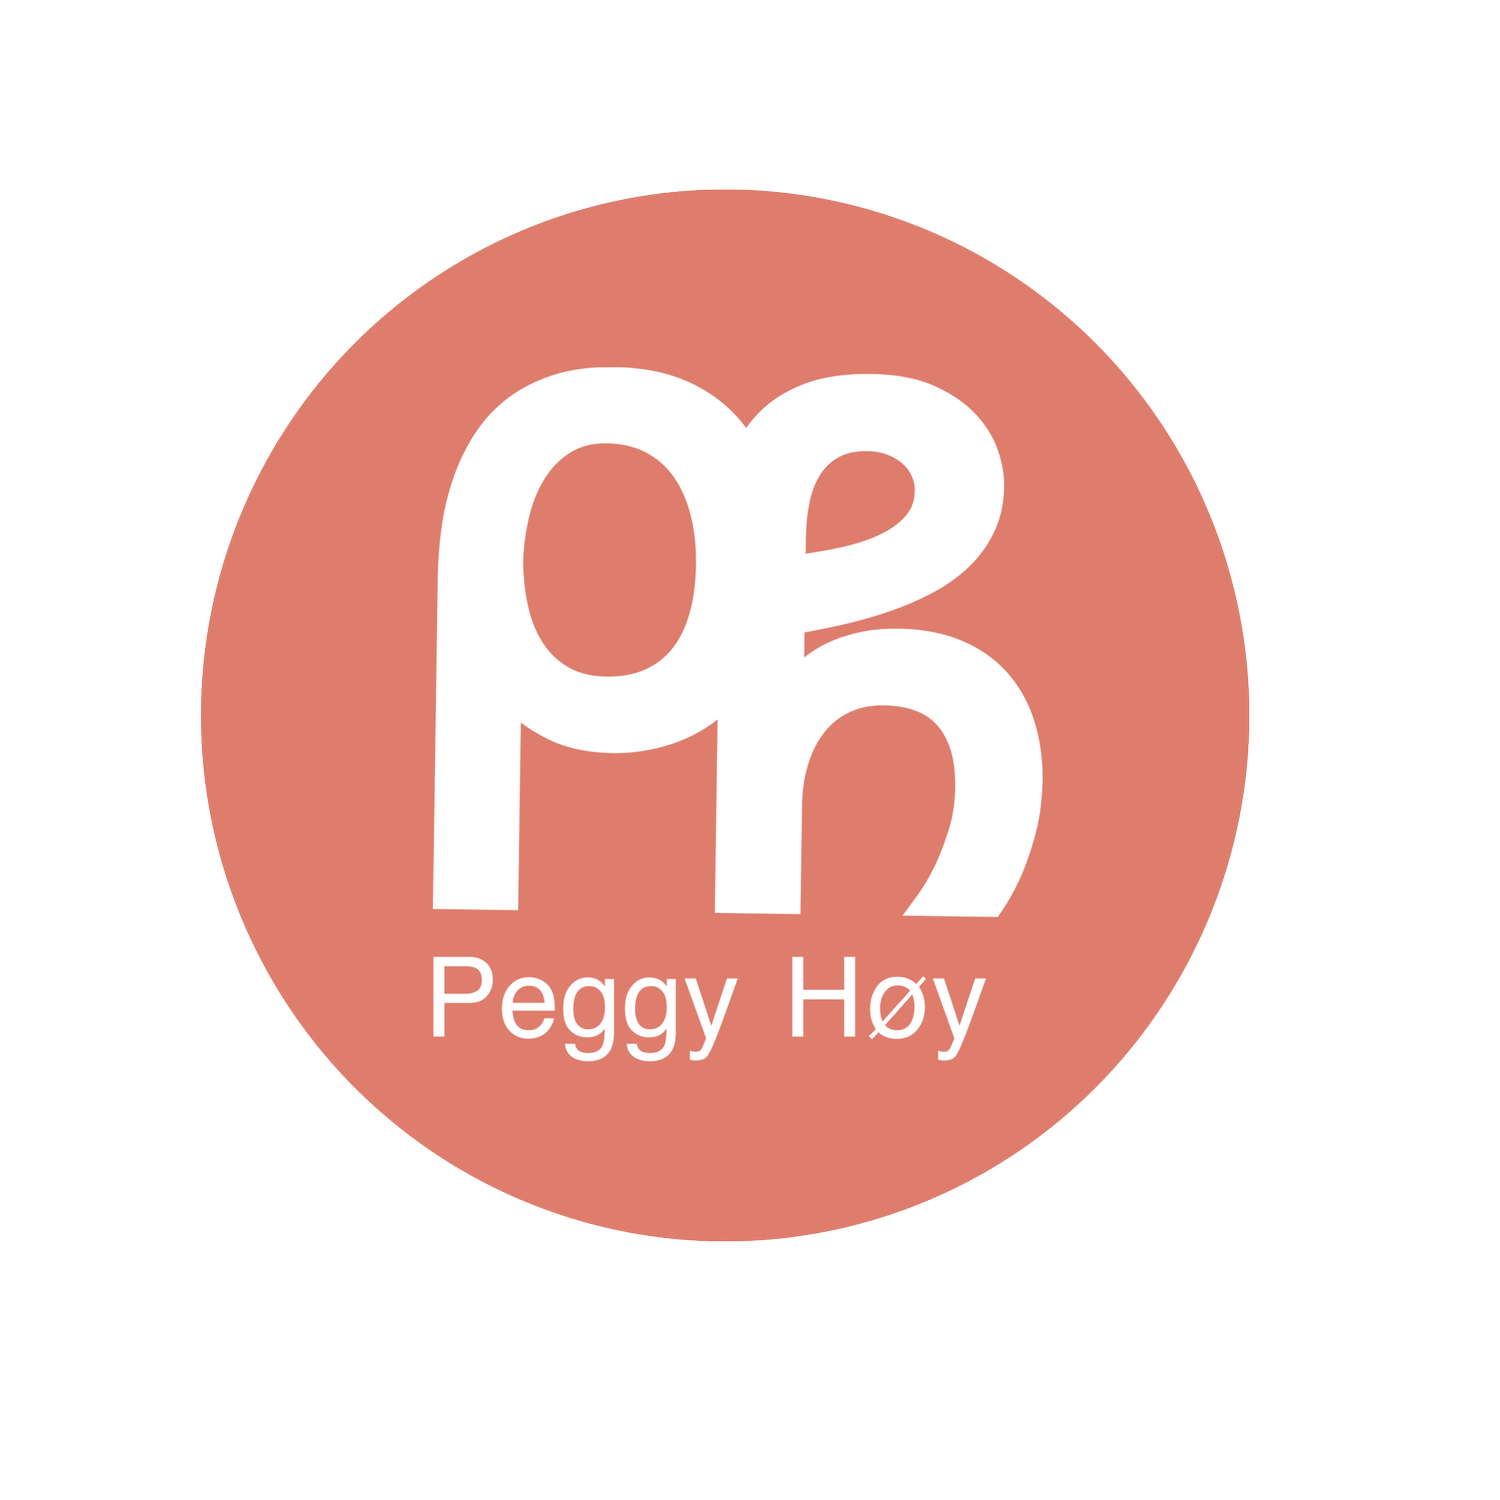 Peggy Høy